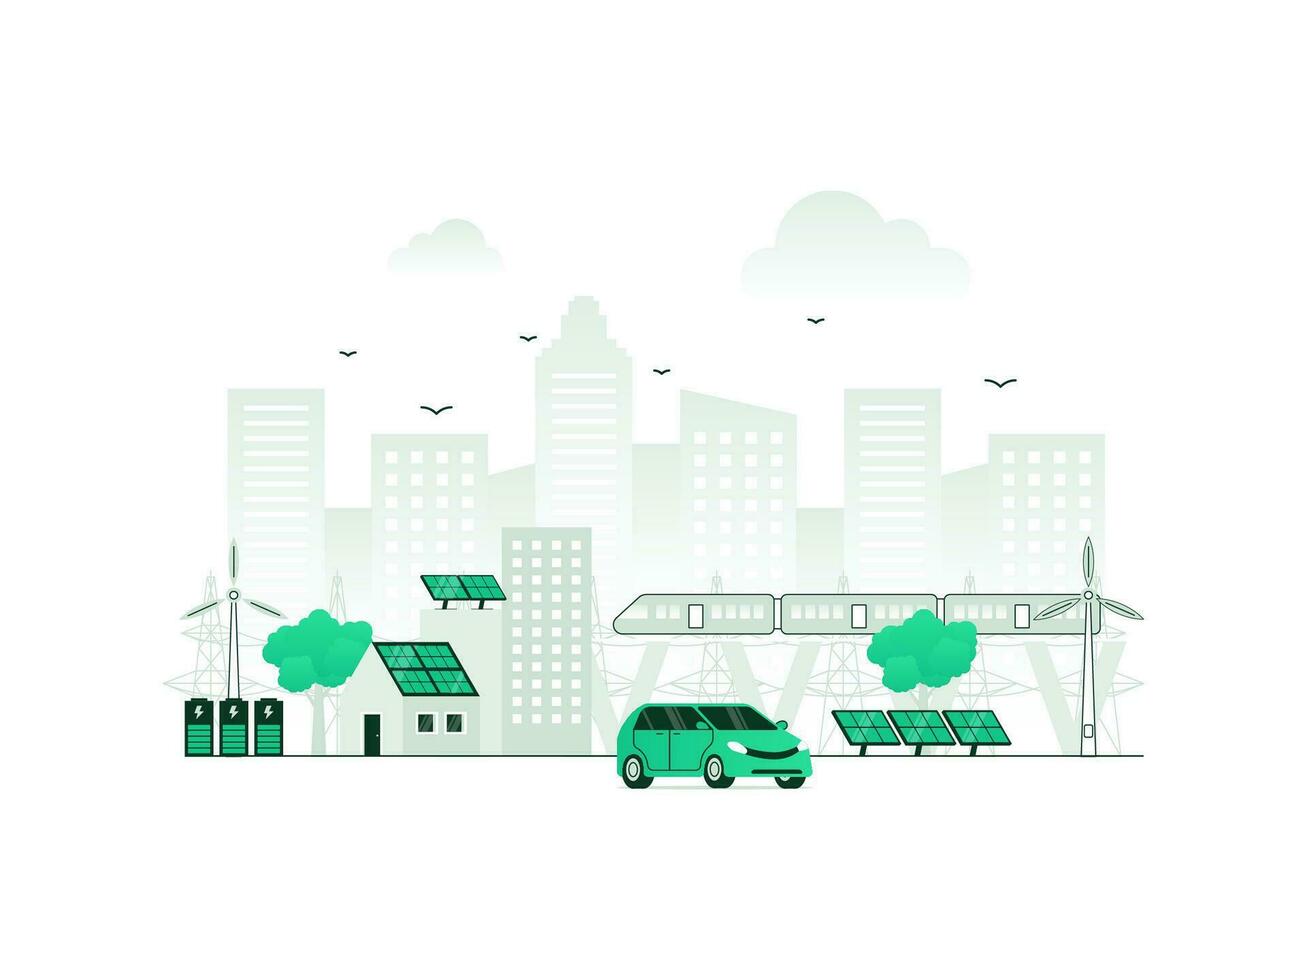 hållbar stad kraft med grön infrastruktur planera. alternativ elektricitet från co2-fri vind turbiner. vektor illustration av ekologisk urban organisation med minimalistisk Färg.